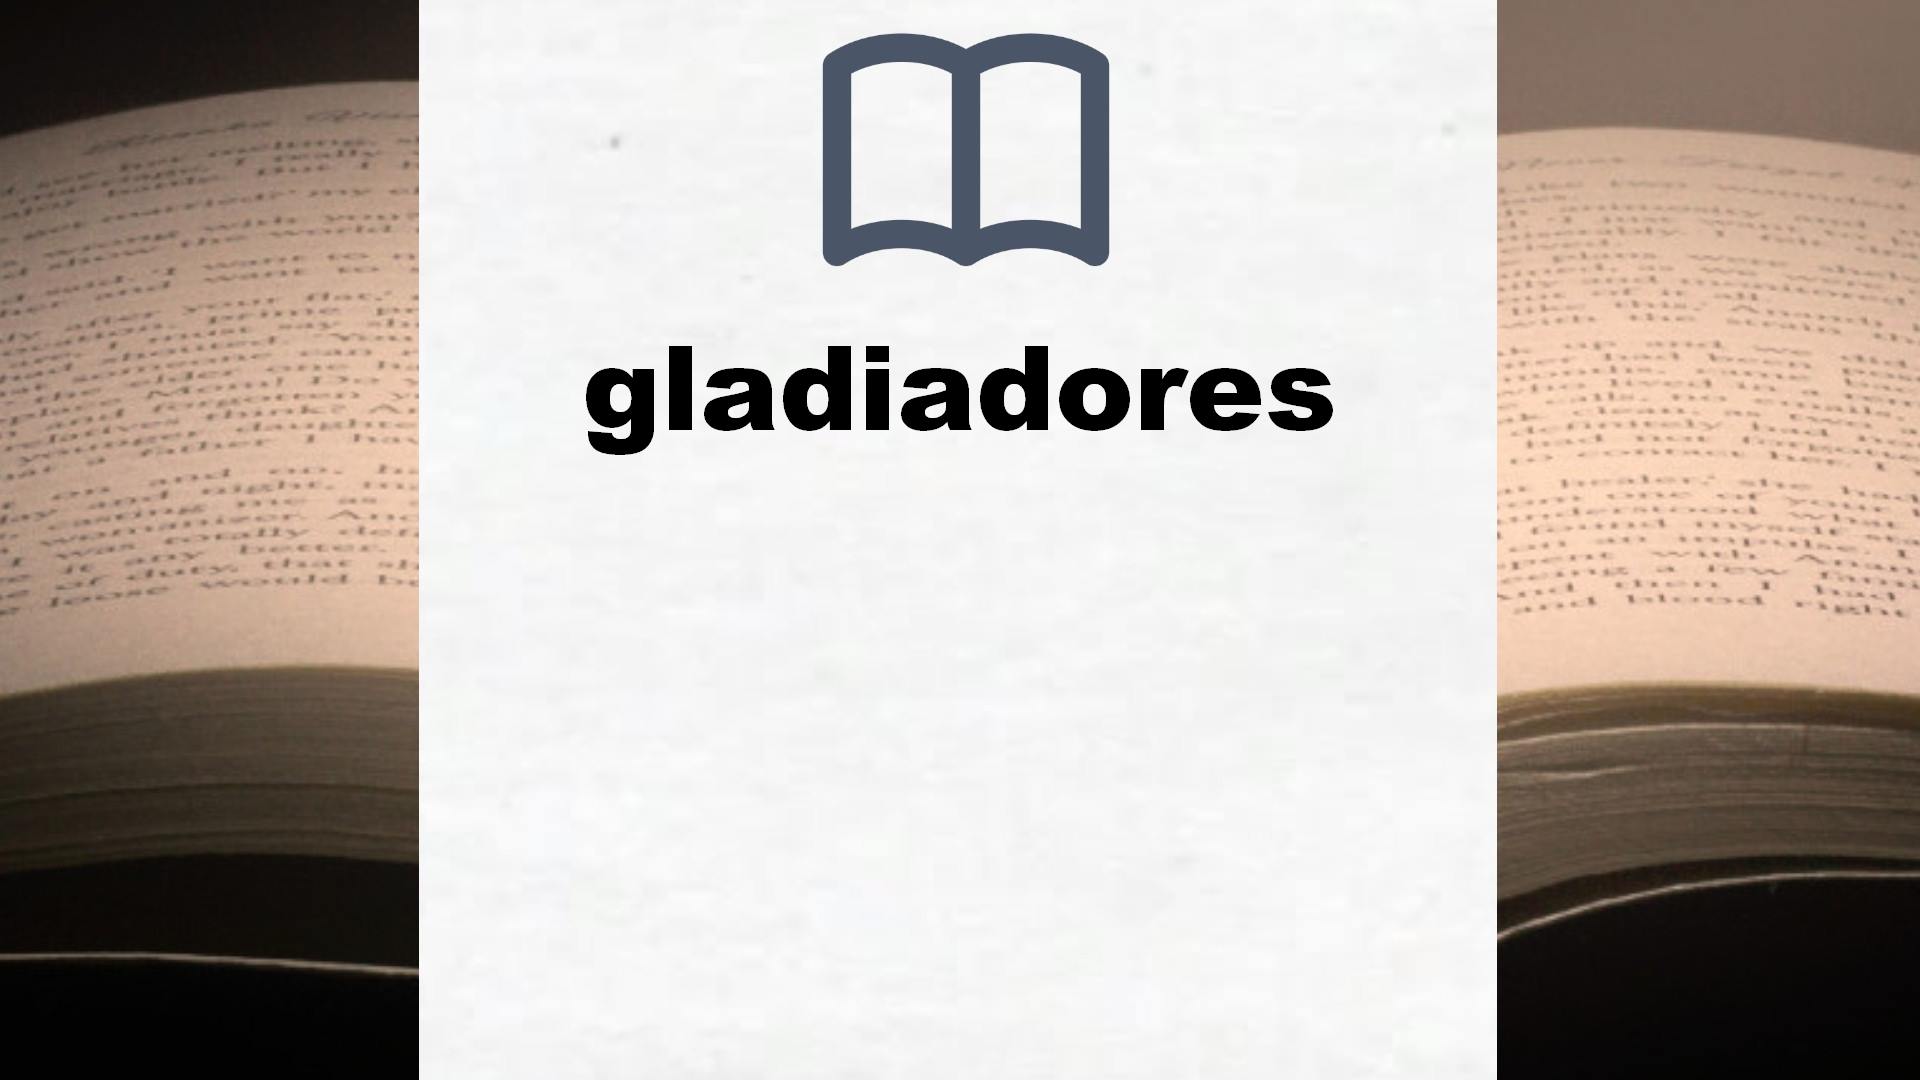 Libros sobre gladiadores